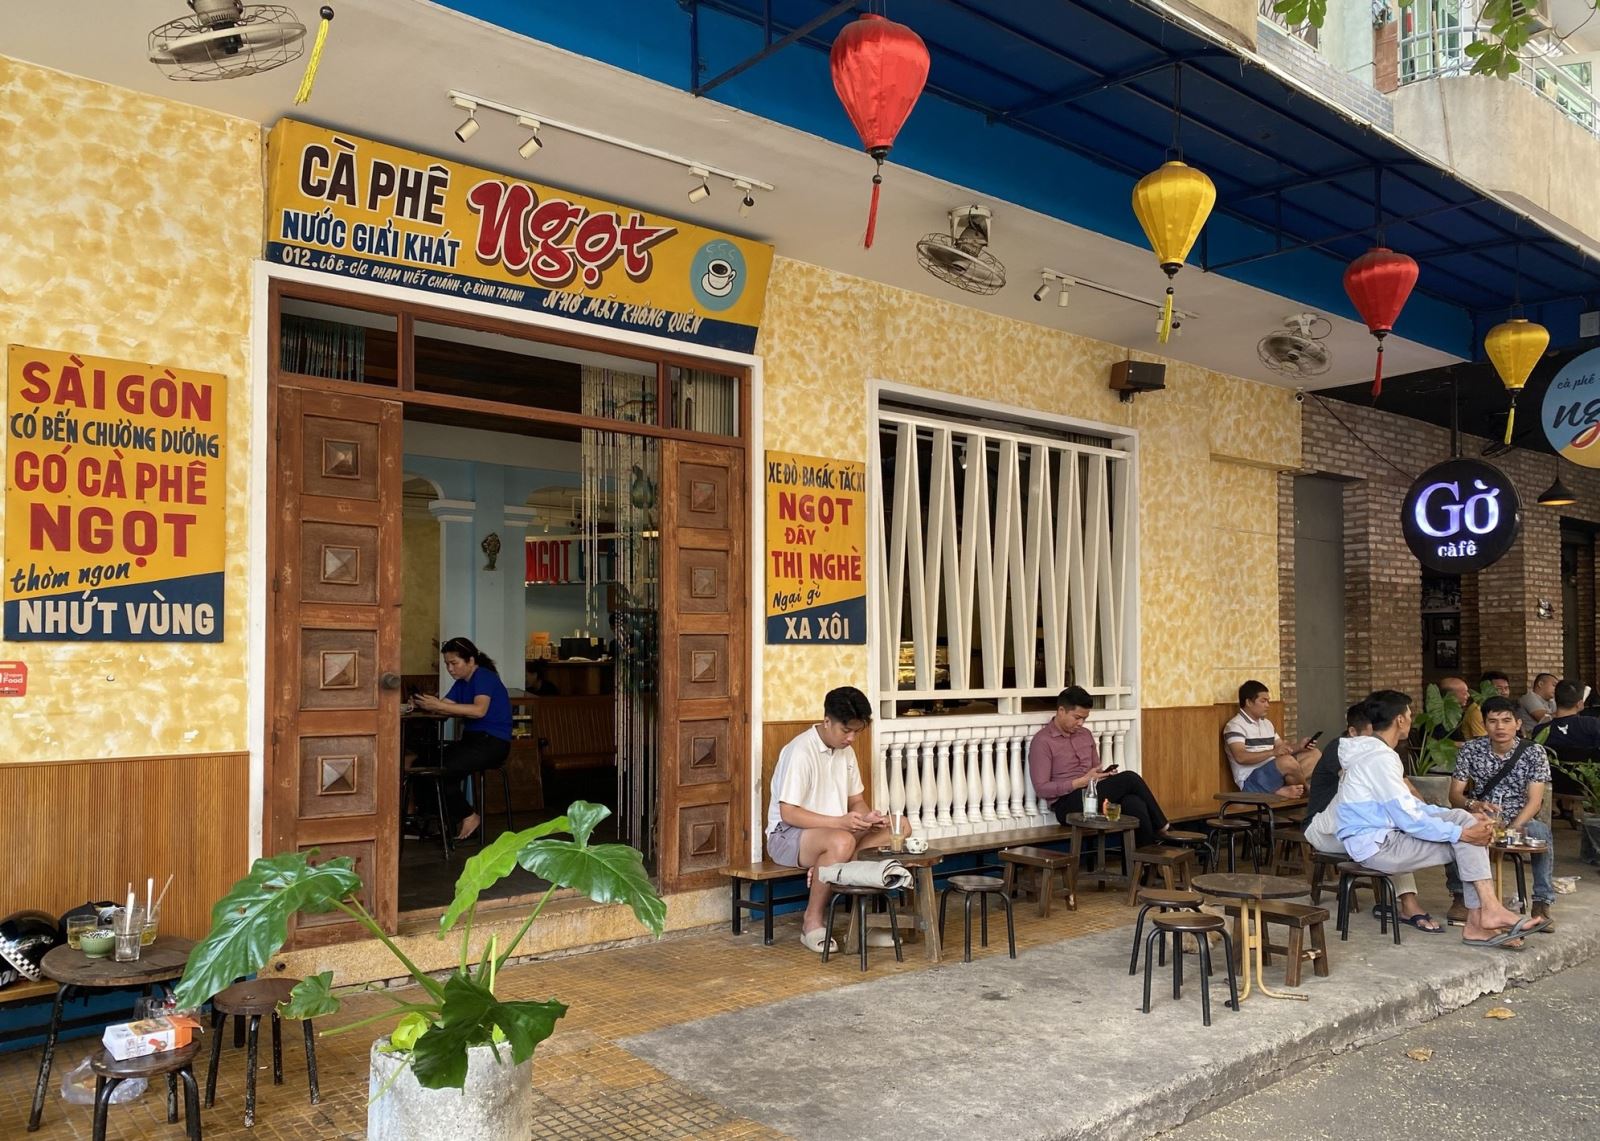 Nghiên cứu về văn hóa vỉa hè ở Thành phố Hồ Chí Minh: Vấn đề khái niệm và hướng tiếp cận